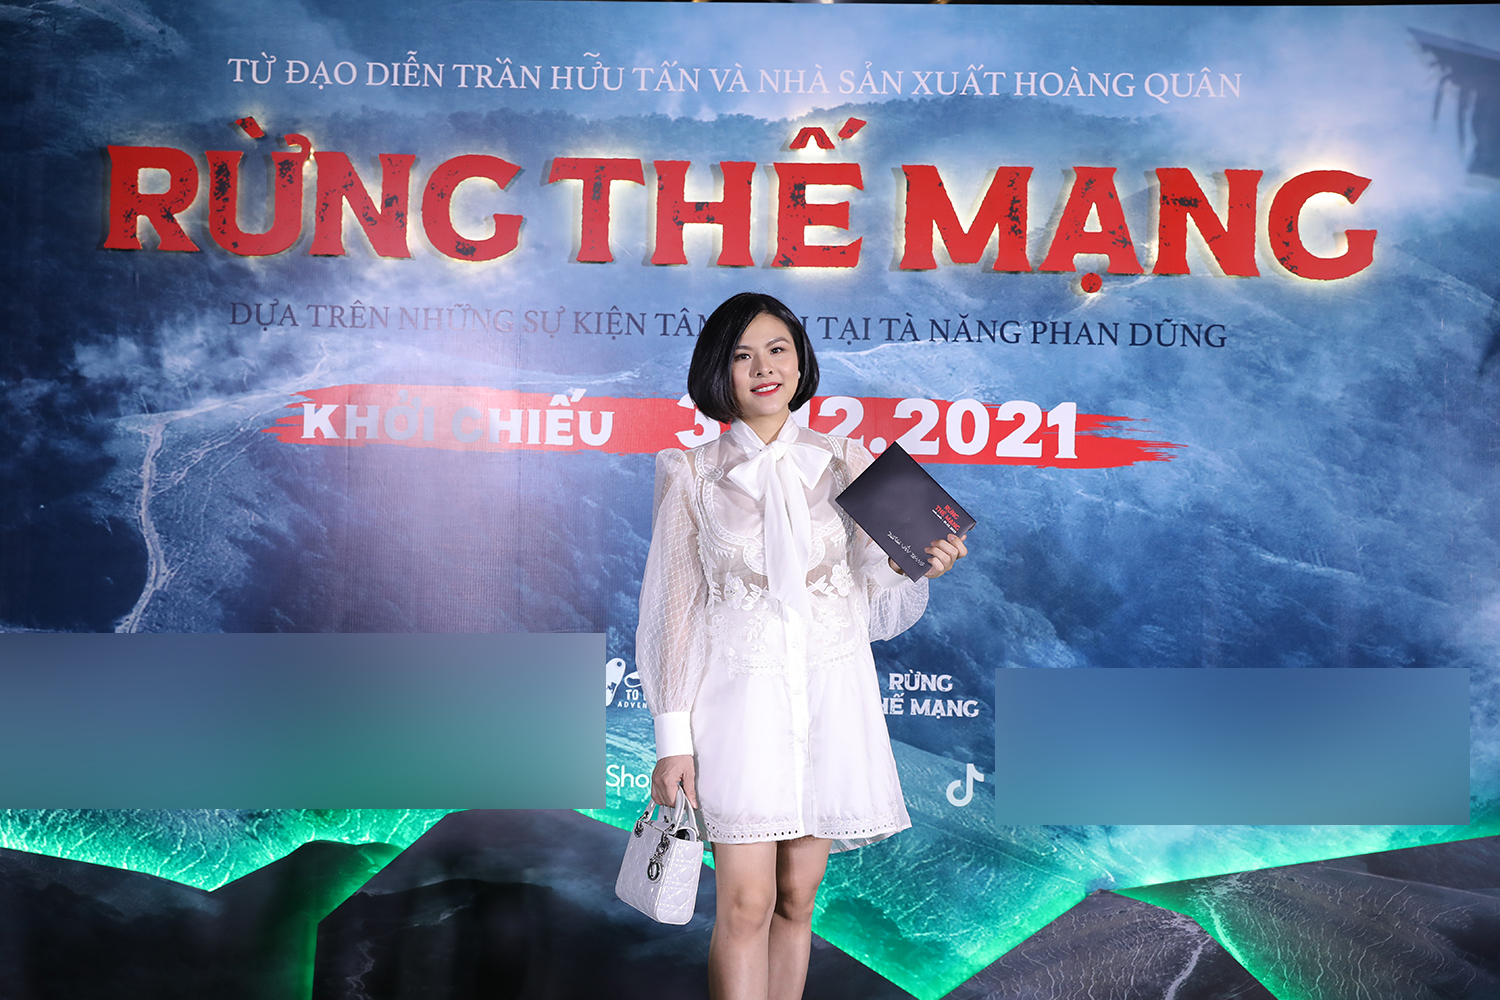 Nữ diễn viên Vân Trang xuất hiện rạng rỡ trên thảm đỏ ra mắt phim 'Rừng thế mạng'. Cô vừa hạ sinh hai con sinh đôi vào tháng 10 vừa qua.